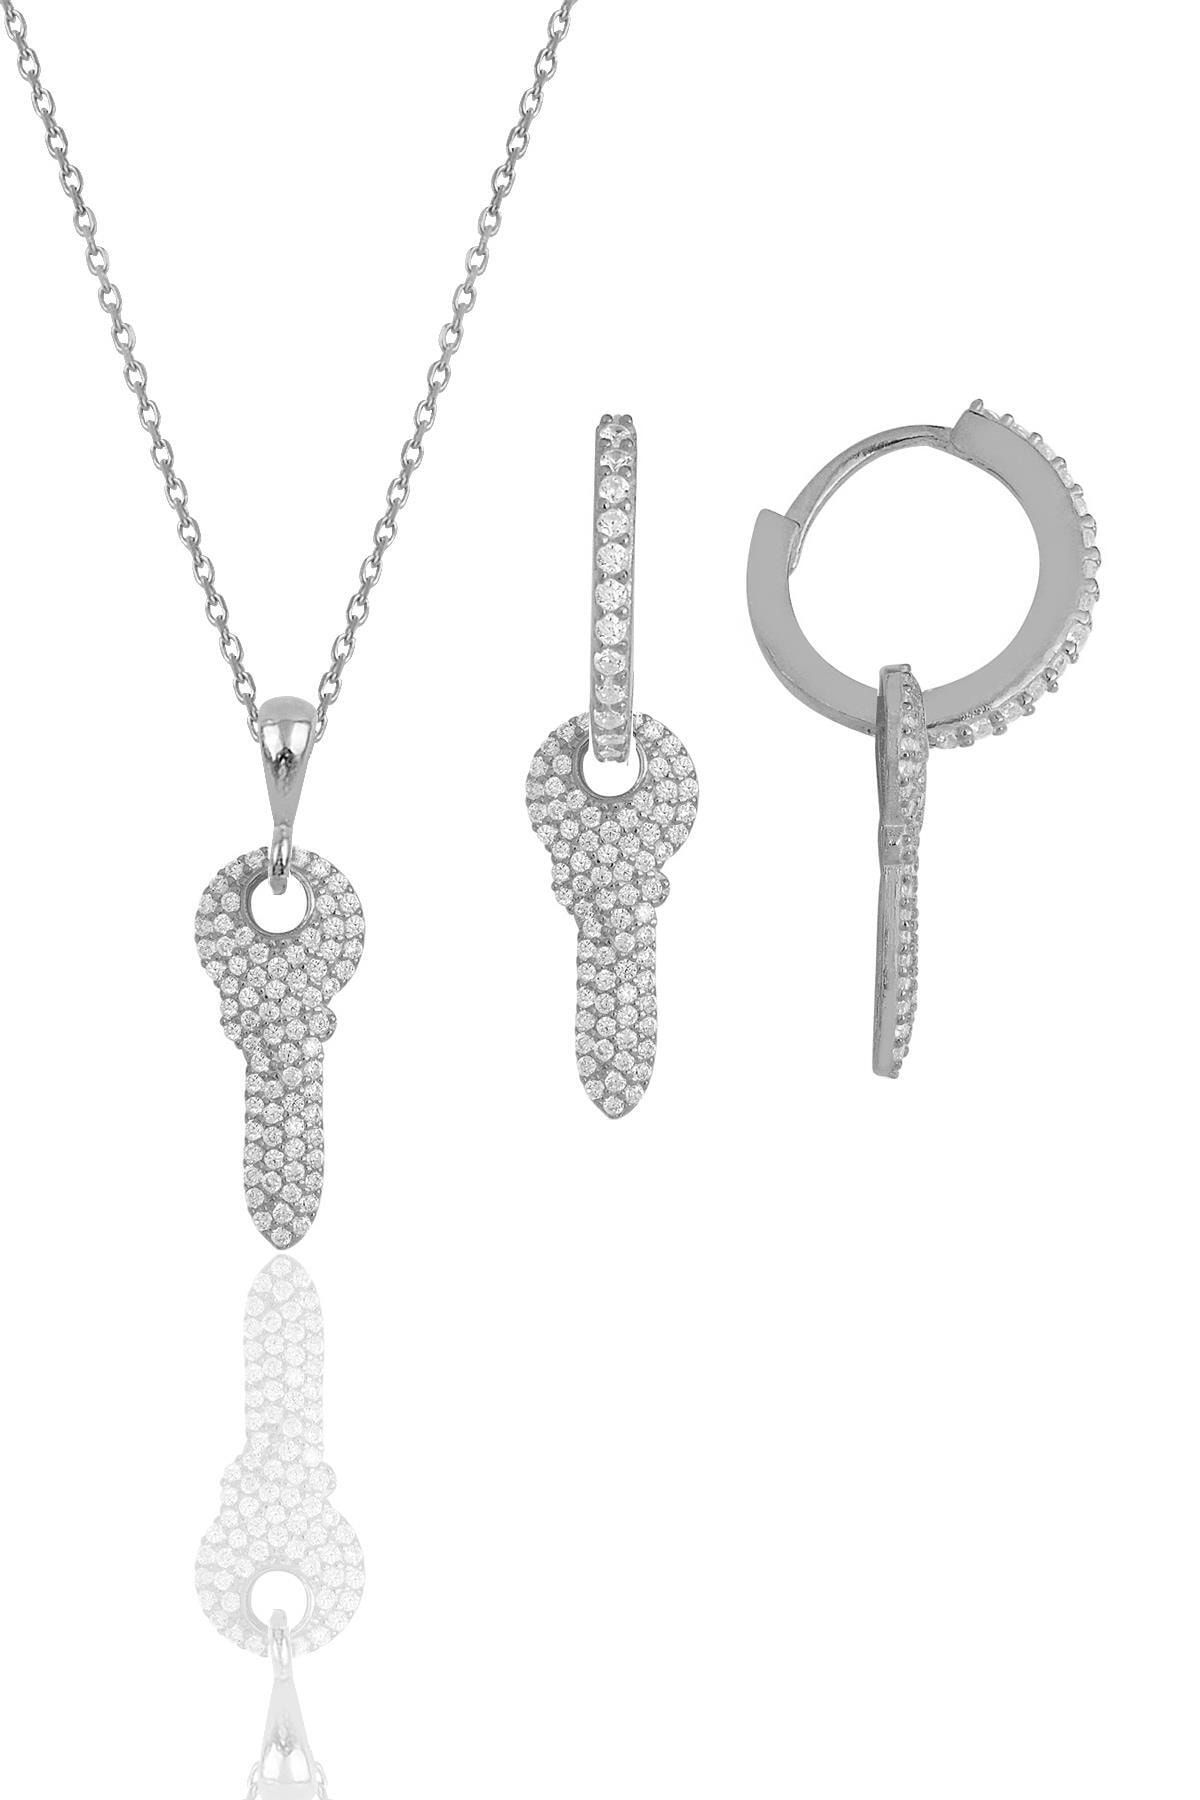 Söğütlü Silver Gümüş Rodyumlu Zirkon Taşlı Anahtar Kolye Ve Küpe Ikili Set